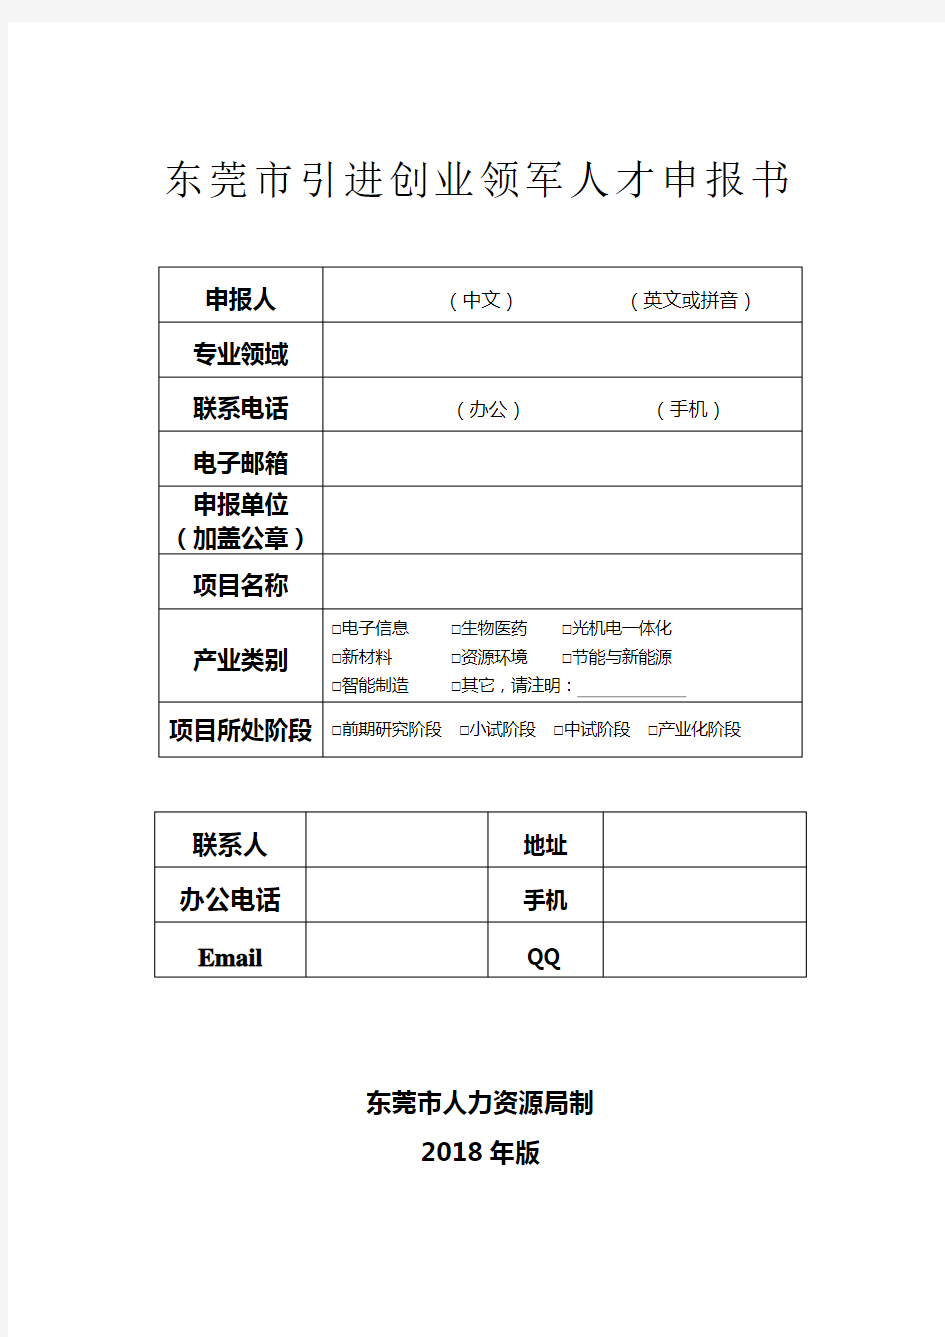 (完整版)东莞市引进创业领军人才申报书模板(2018年版)